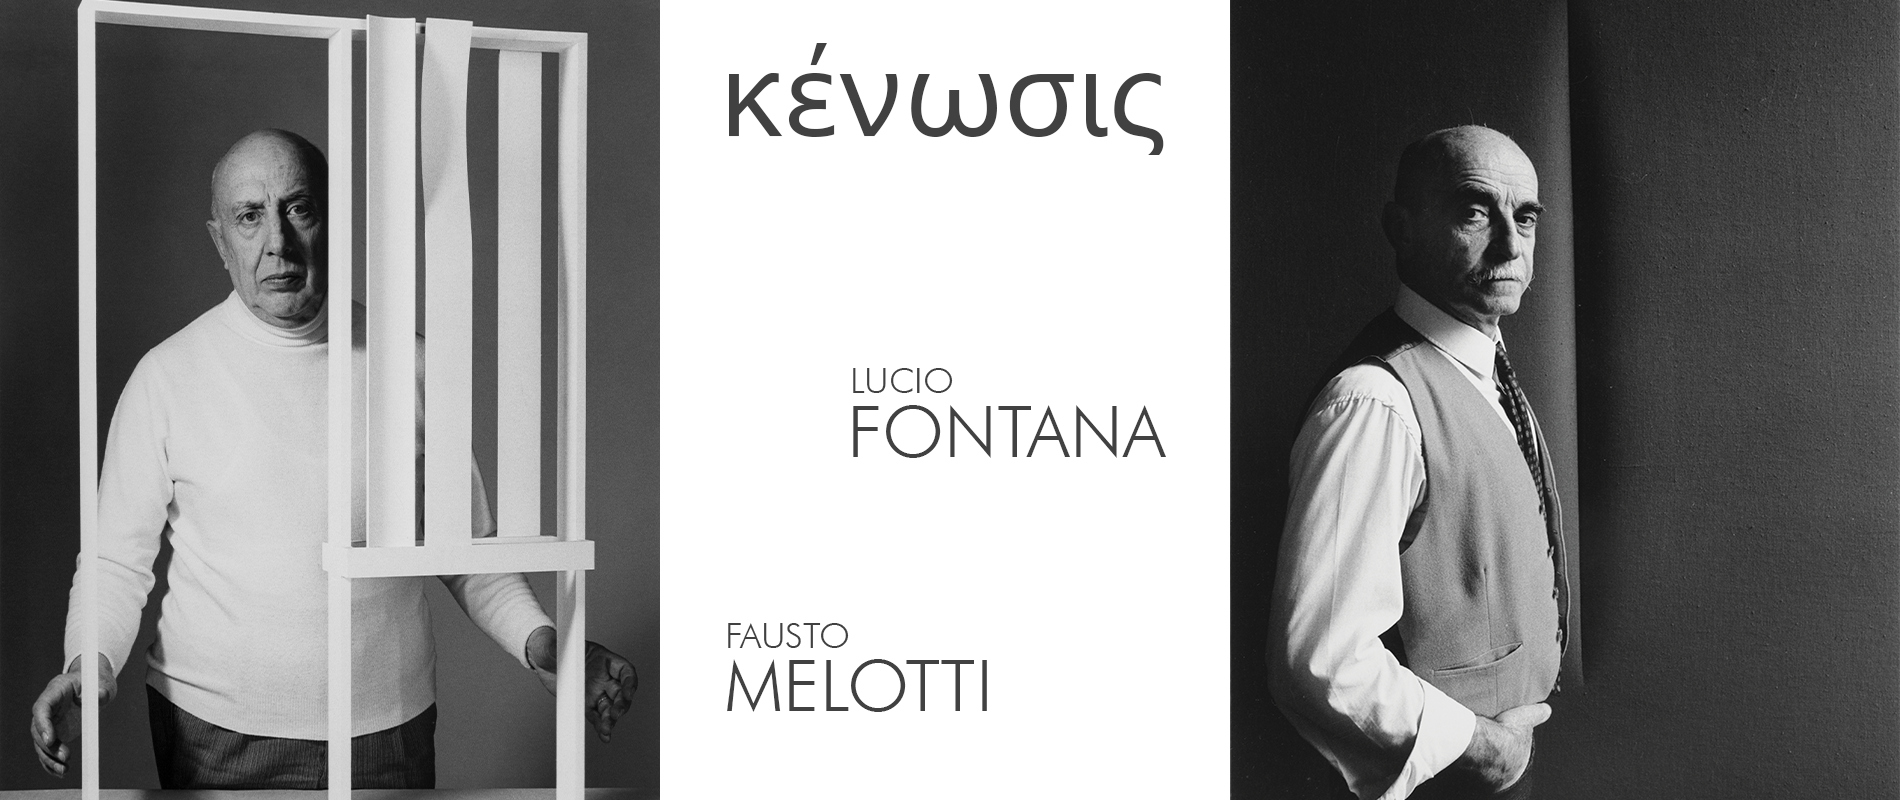 κένωσις – Lucio Fontana / Fausto Melotti Photo Desktop